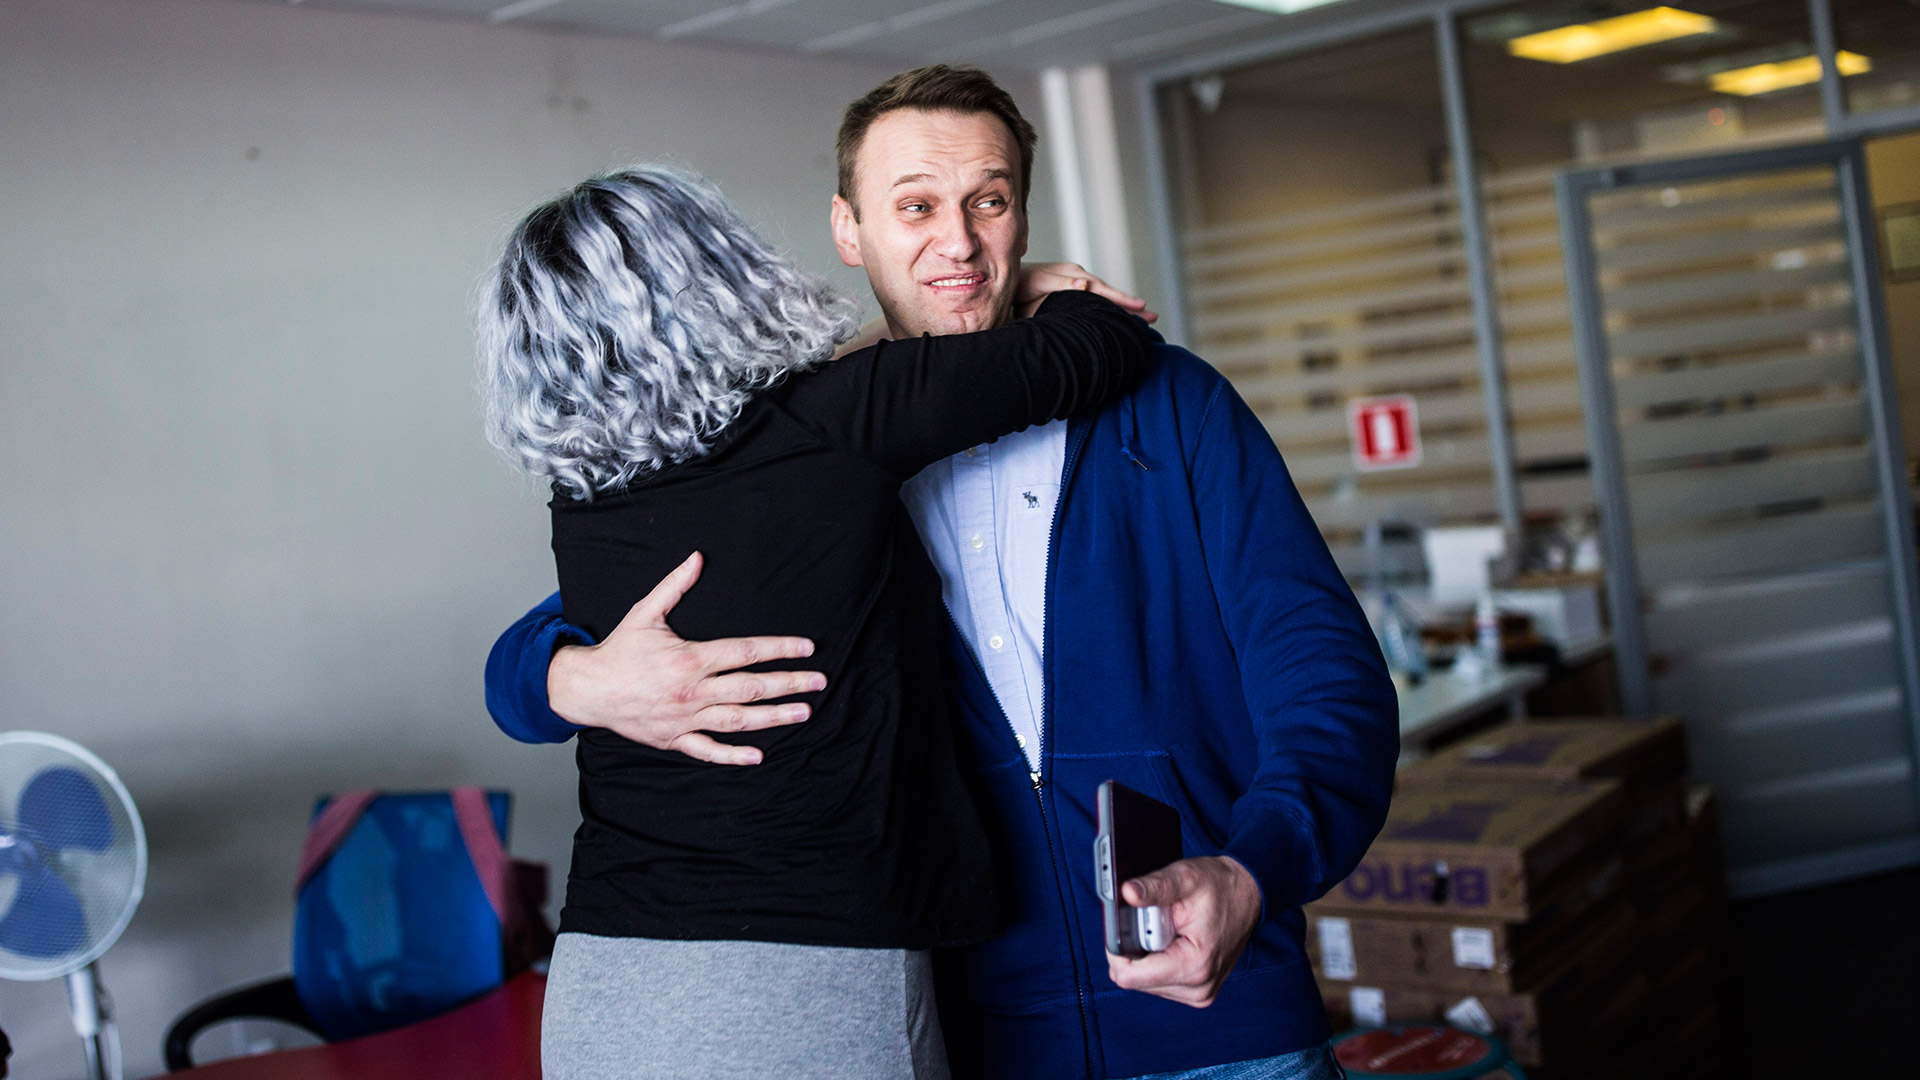 Liberado el opositor ruso Alexei Navalny